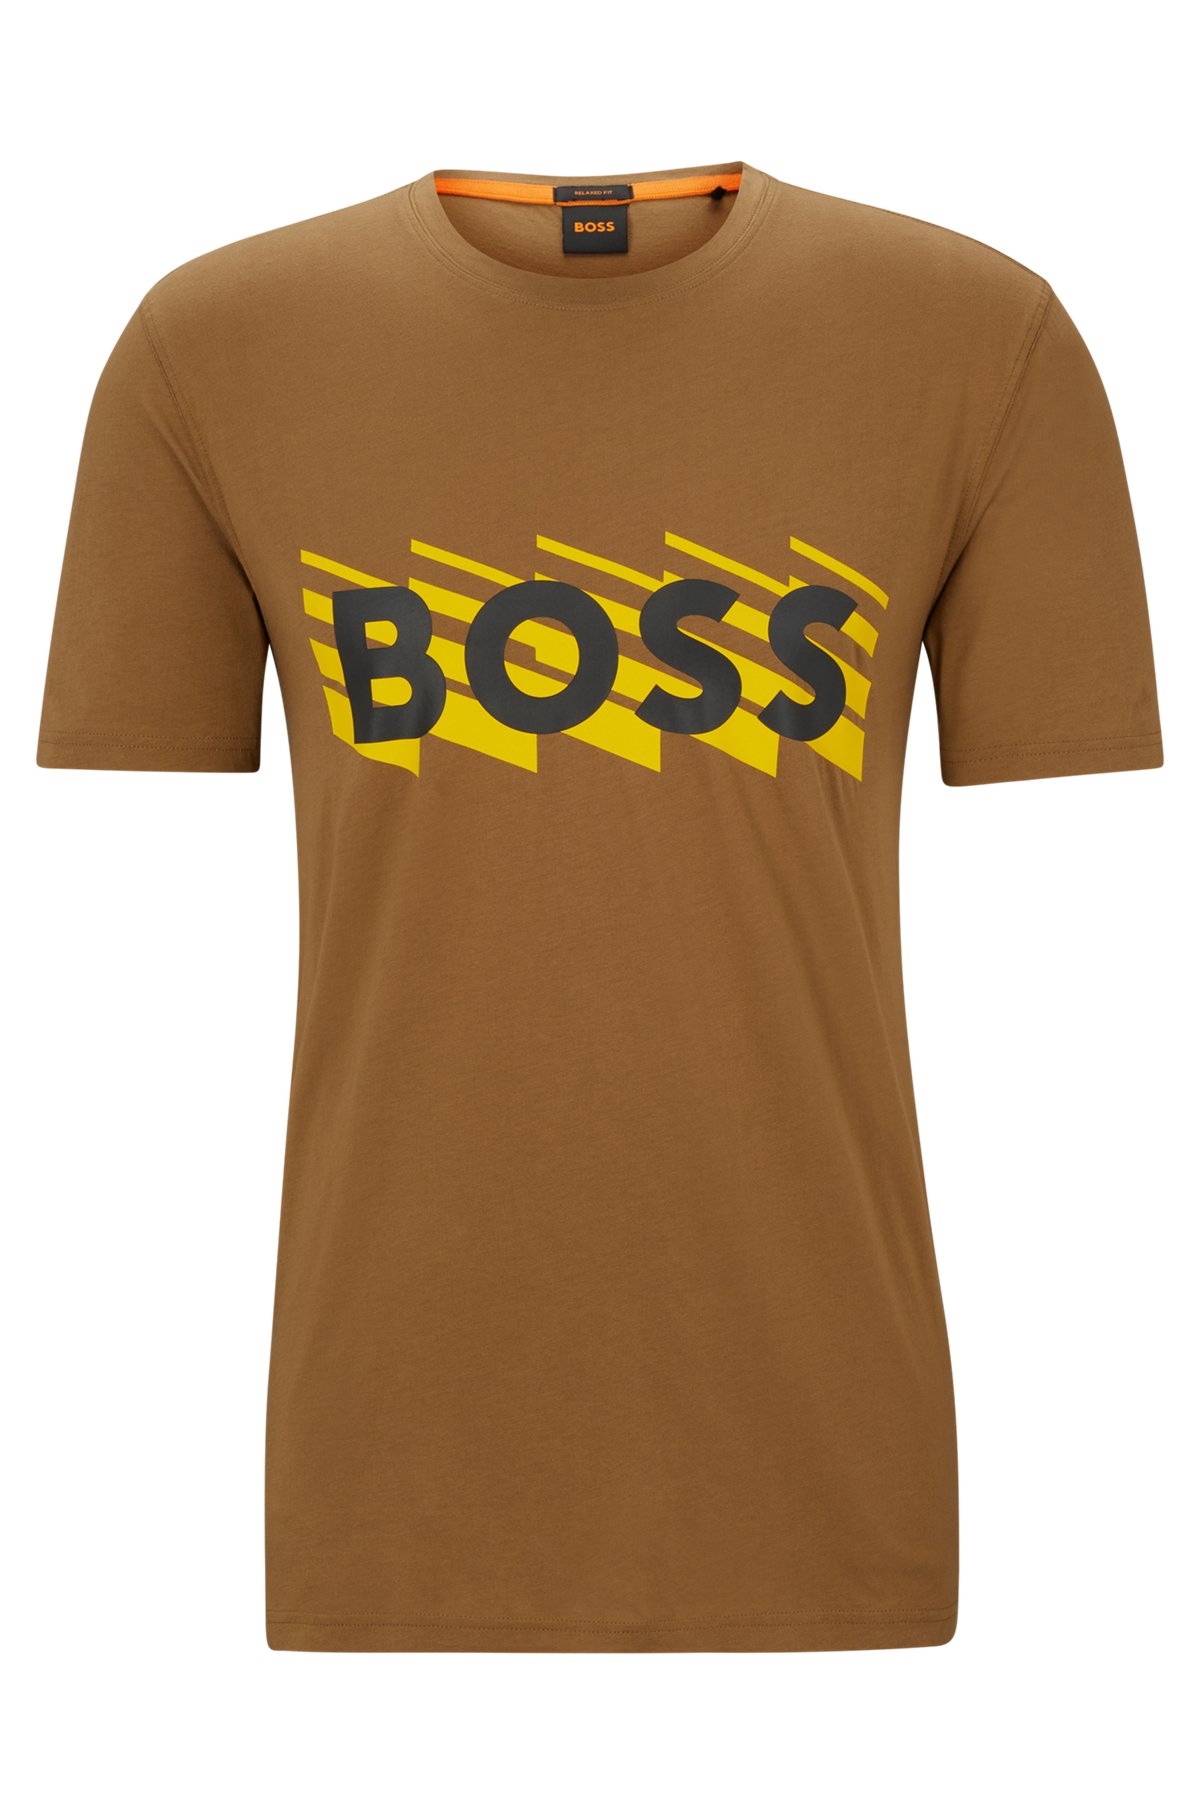 skipper Urter katolsk BOSS - T-shirt i bomuldsjersey med logo